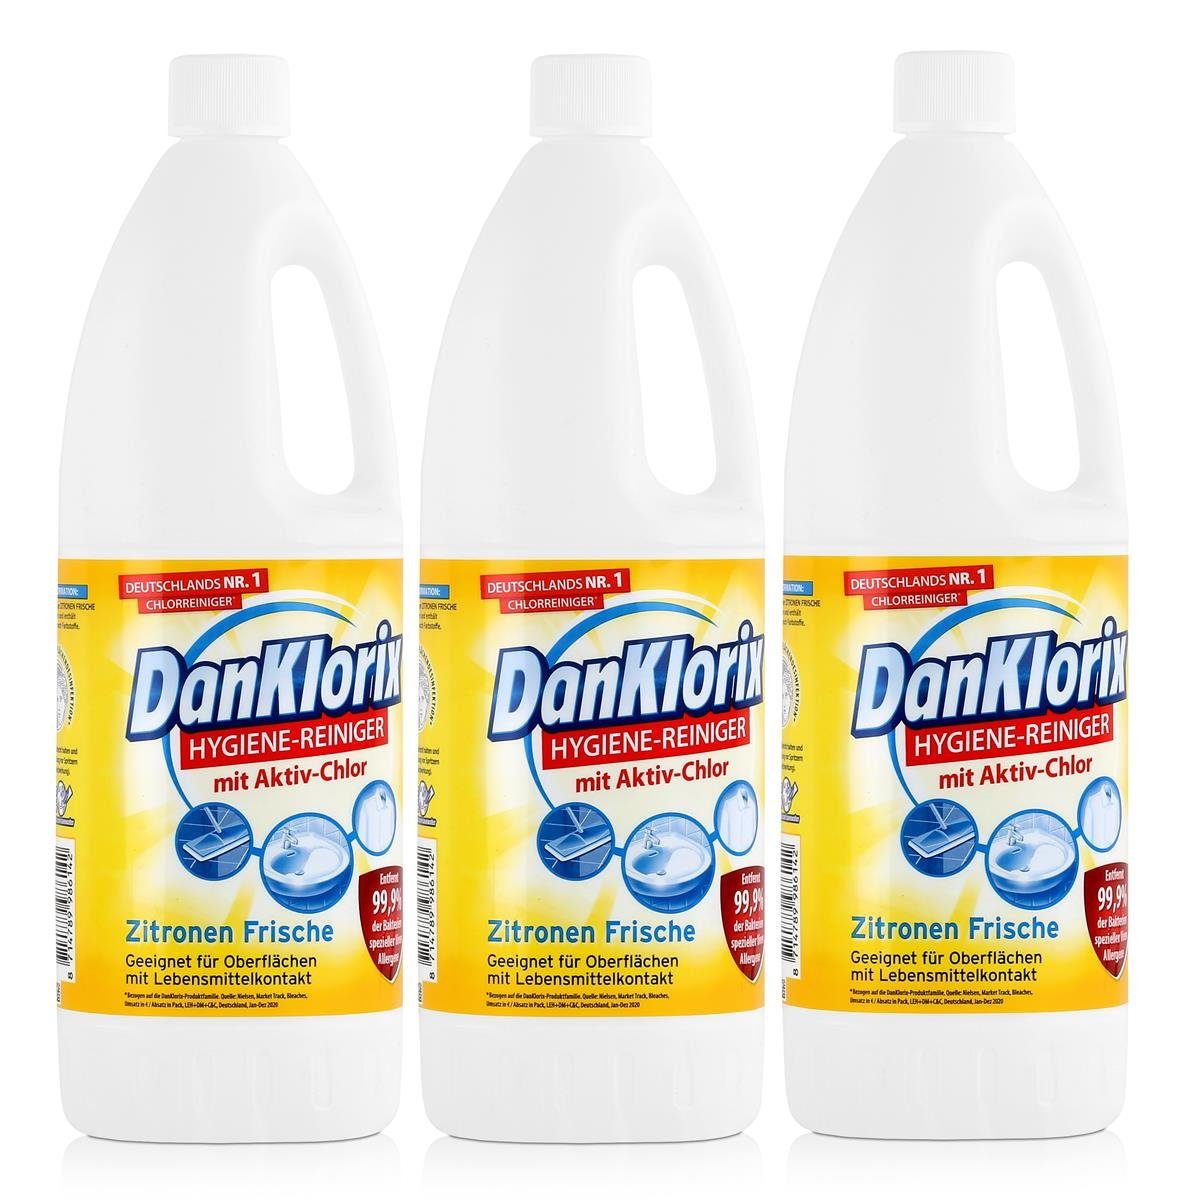 DanKlorix DanKlorix Hygiene-Reiniger Zitronen Frische 1,5L (3e Mit Aktiv-Chlor - WC-Reiniger